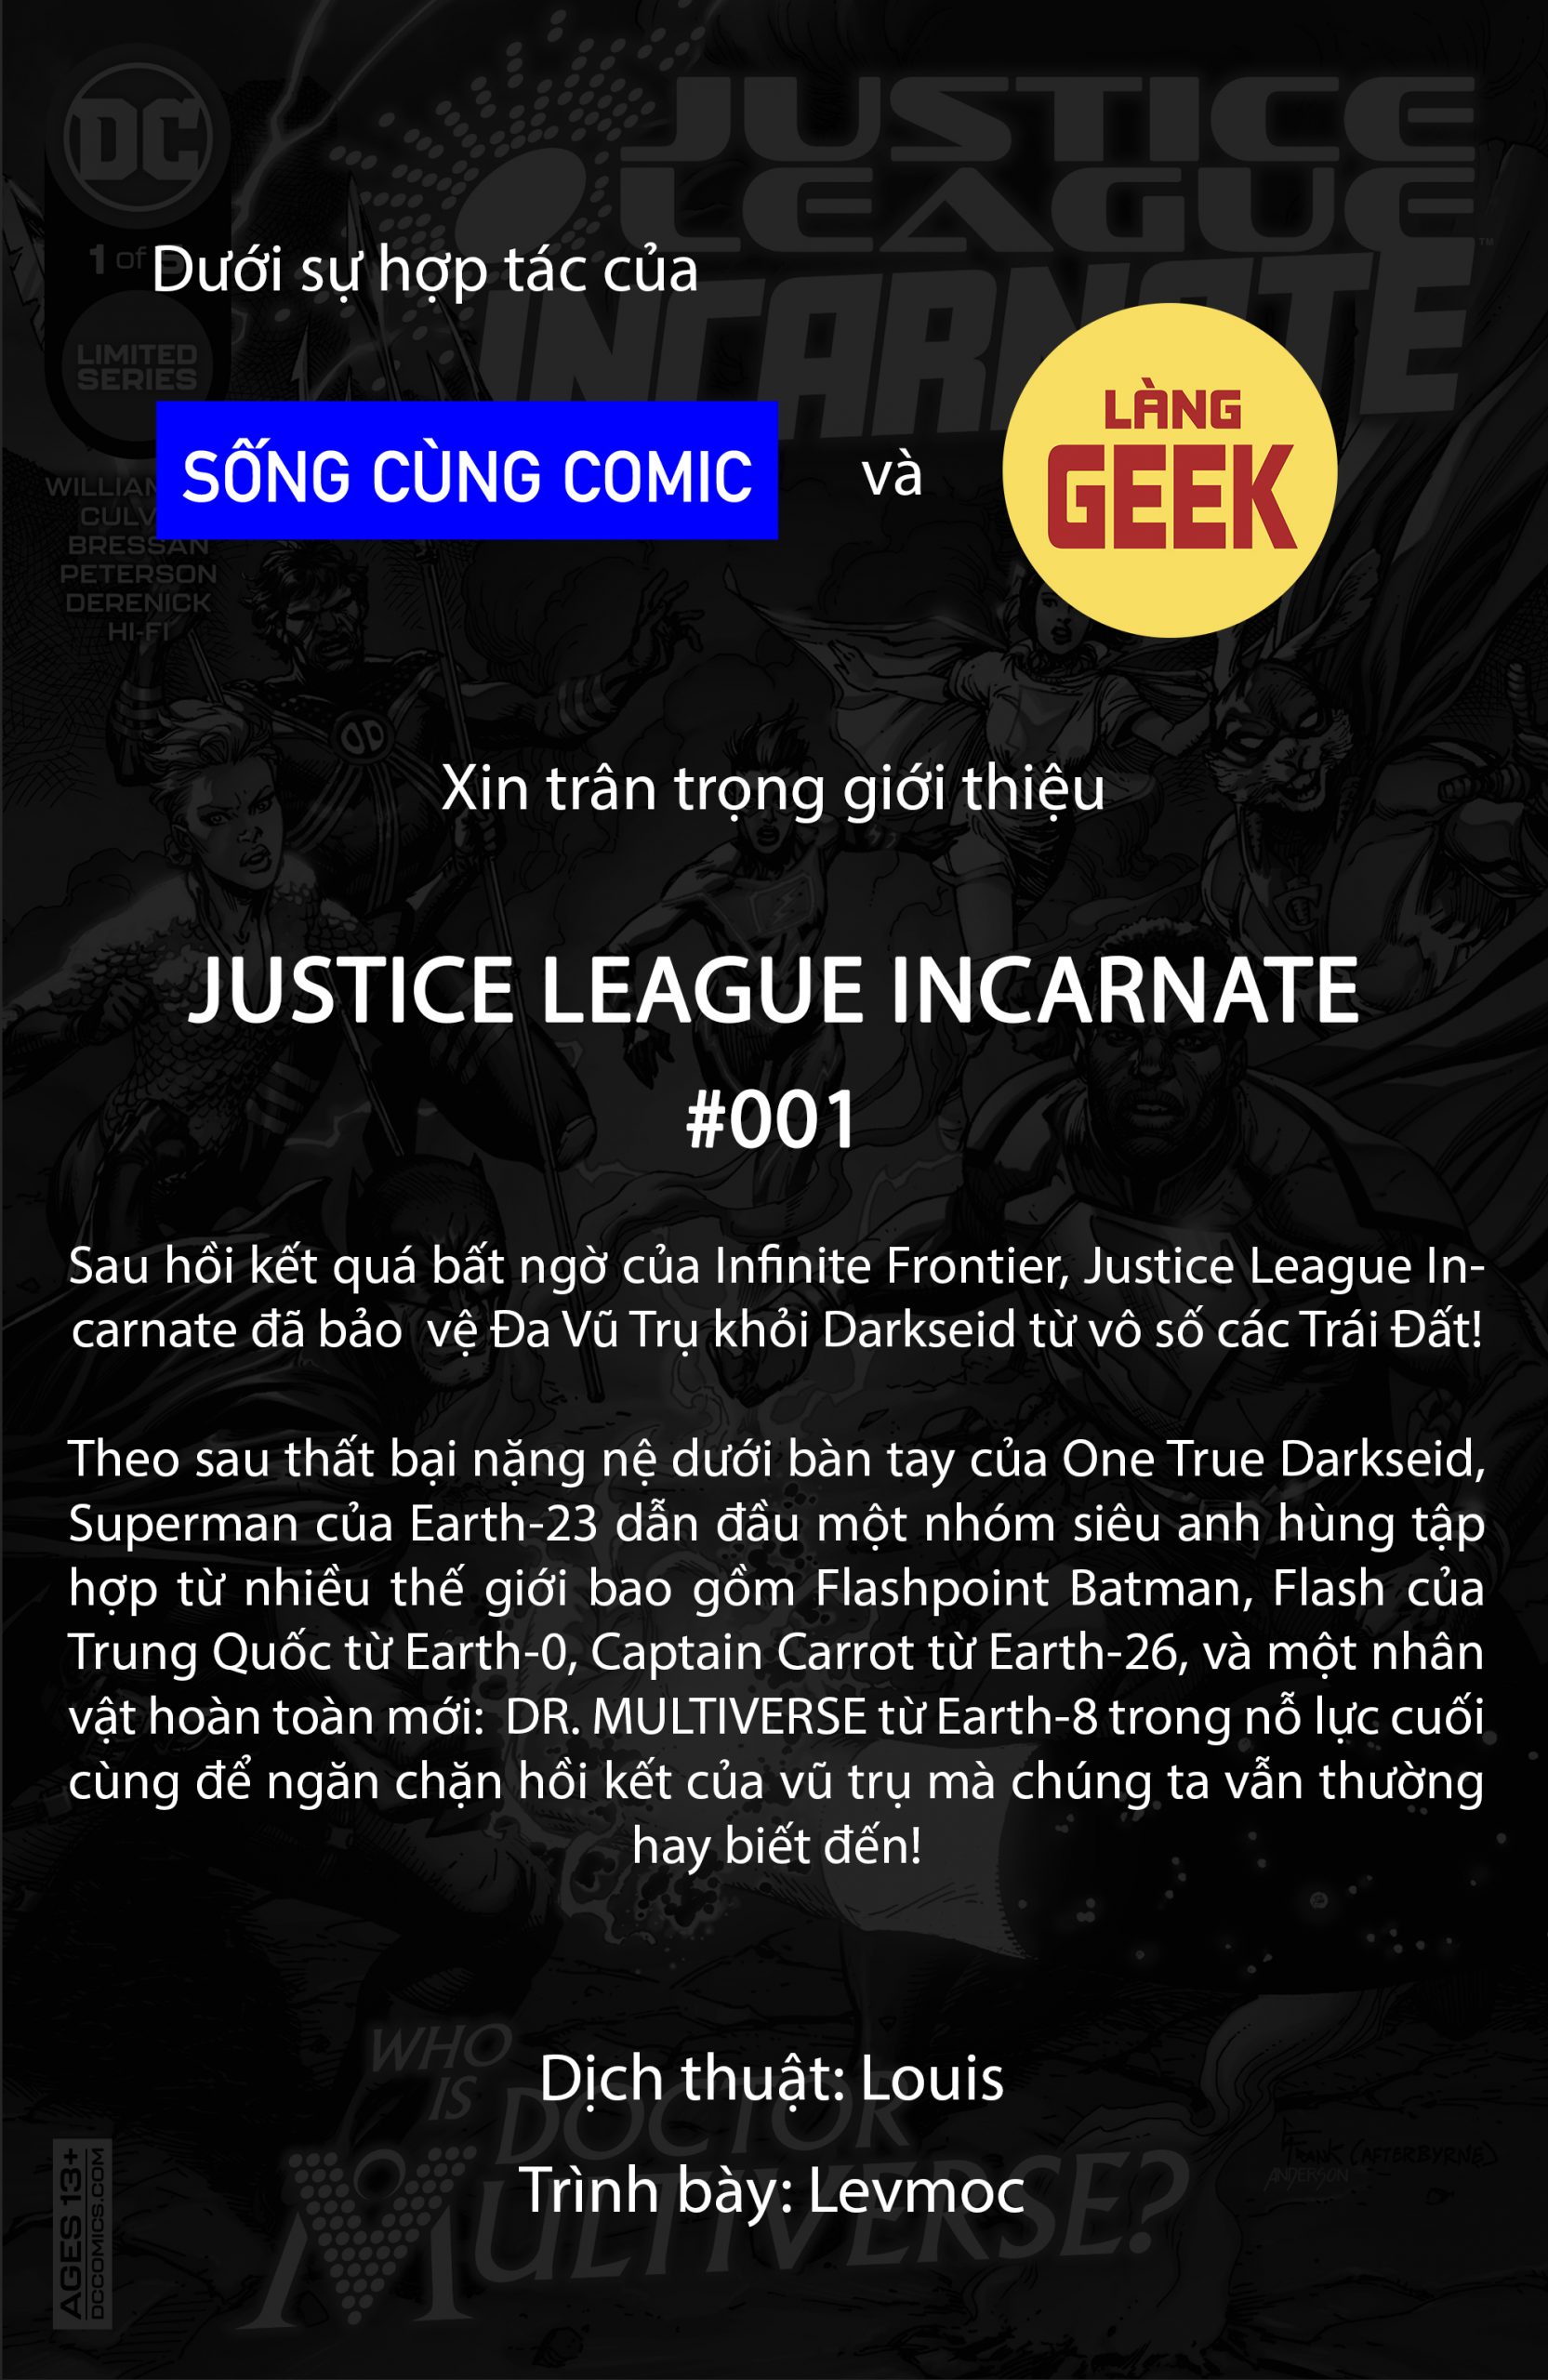 https://langgeek.net/wp-content/webpc-passthru.php?src=https://langgeek.net/wp-content/uploads/2021/12/Justice-League-Incarnate-2021-001-001-scaled.jpg&nocache=1